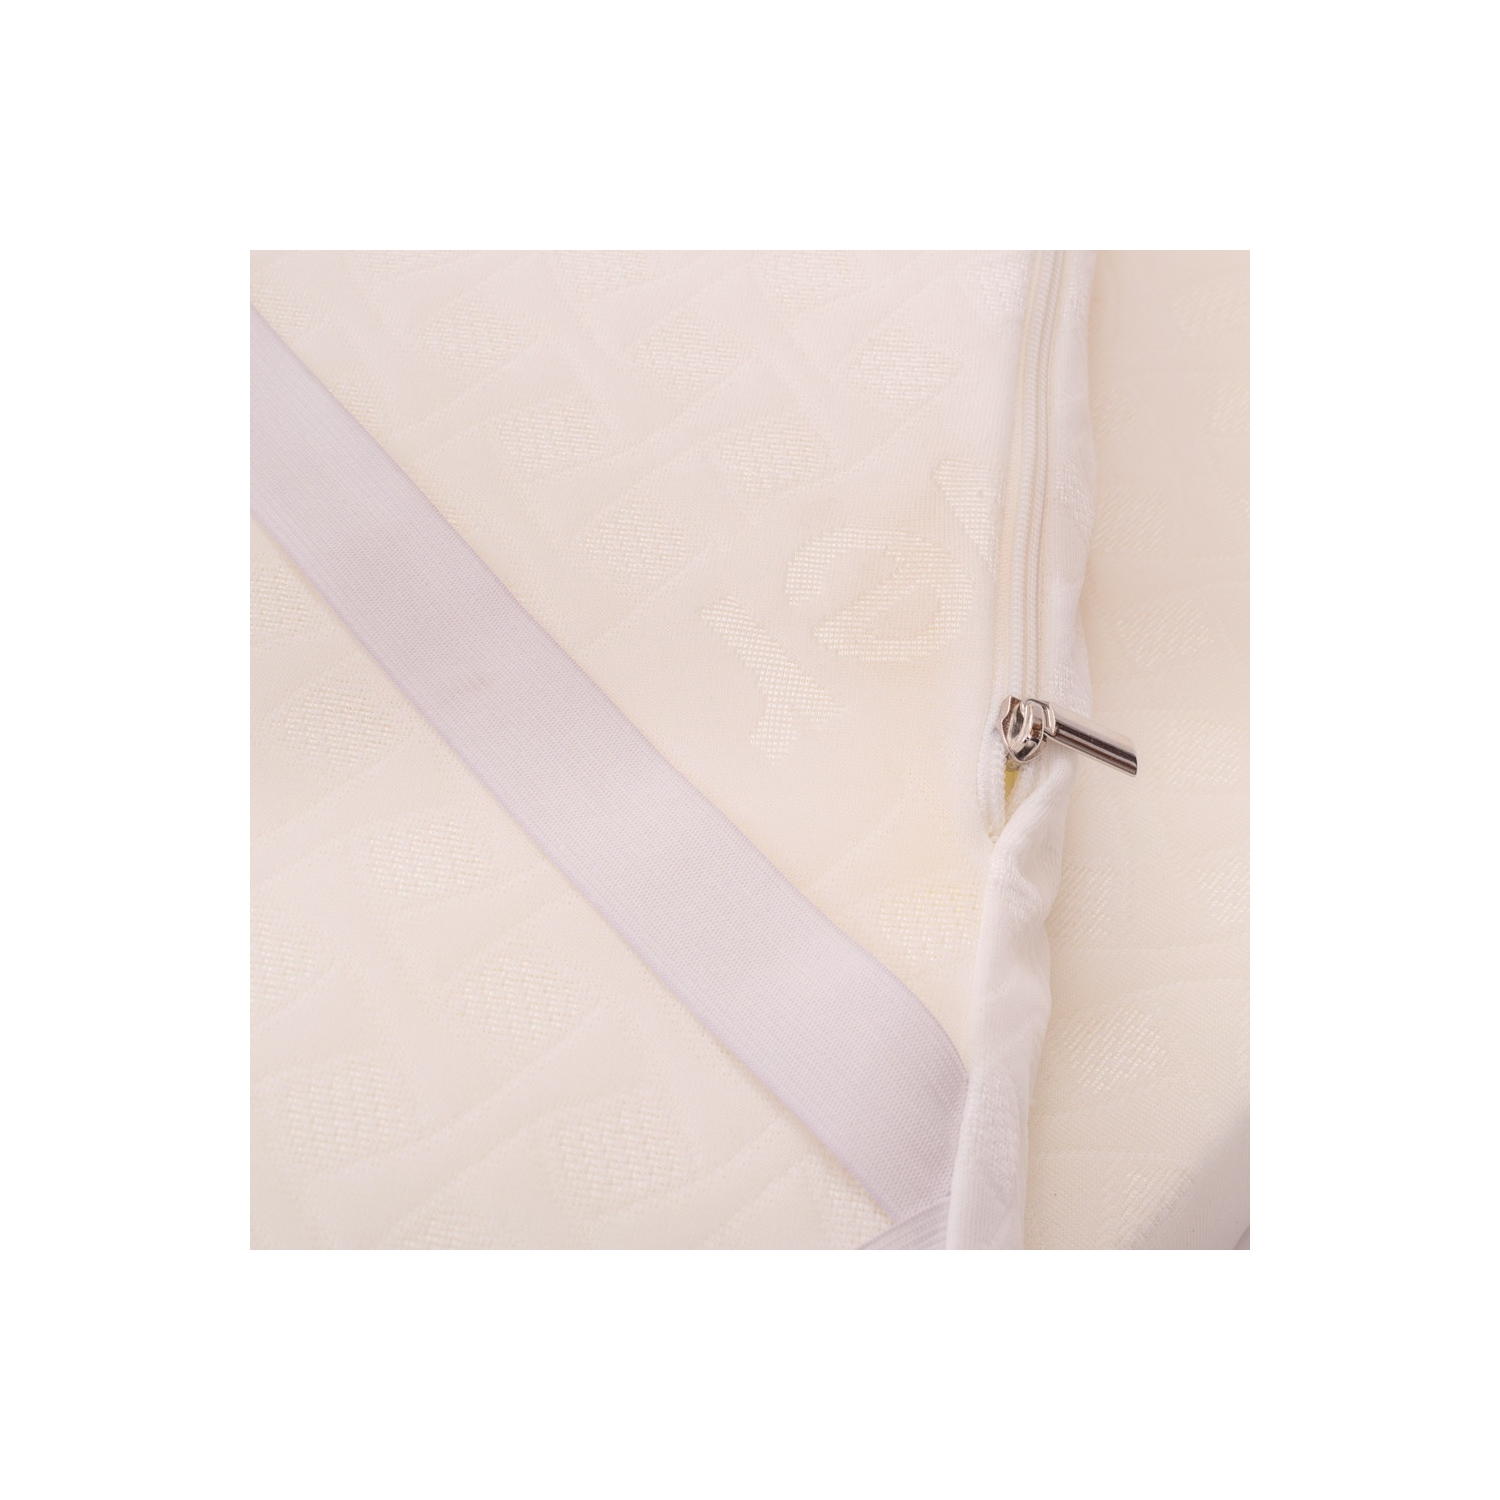 Topper Matrimoniale 165x190 alto 5 cm, correttore materasso in Memory Foam  - Sfoderabile, Dispositivo Medico, Made in Italy 100%. One : :  Casa e cucina